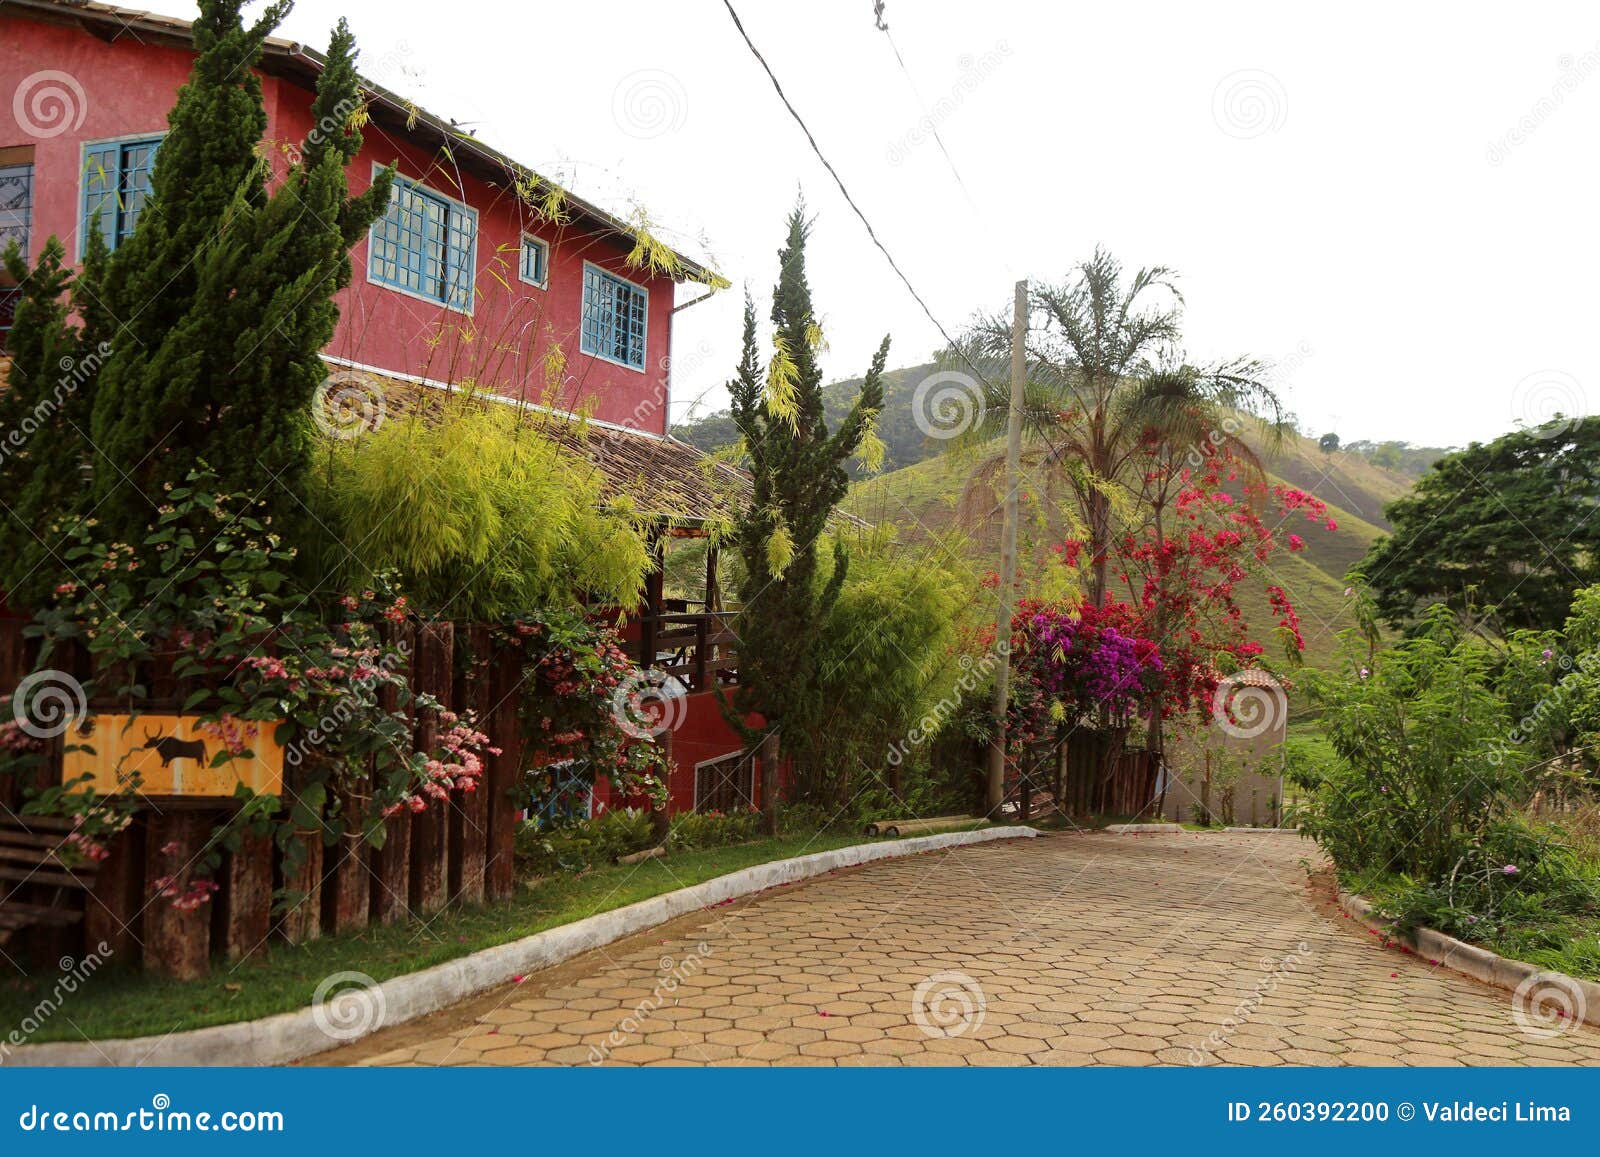 one street of cabeÃÂ§a de boi village in minas gerais